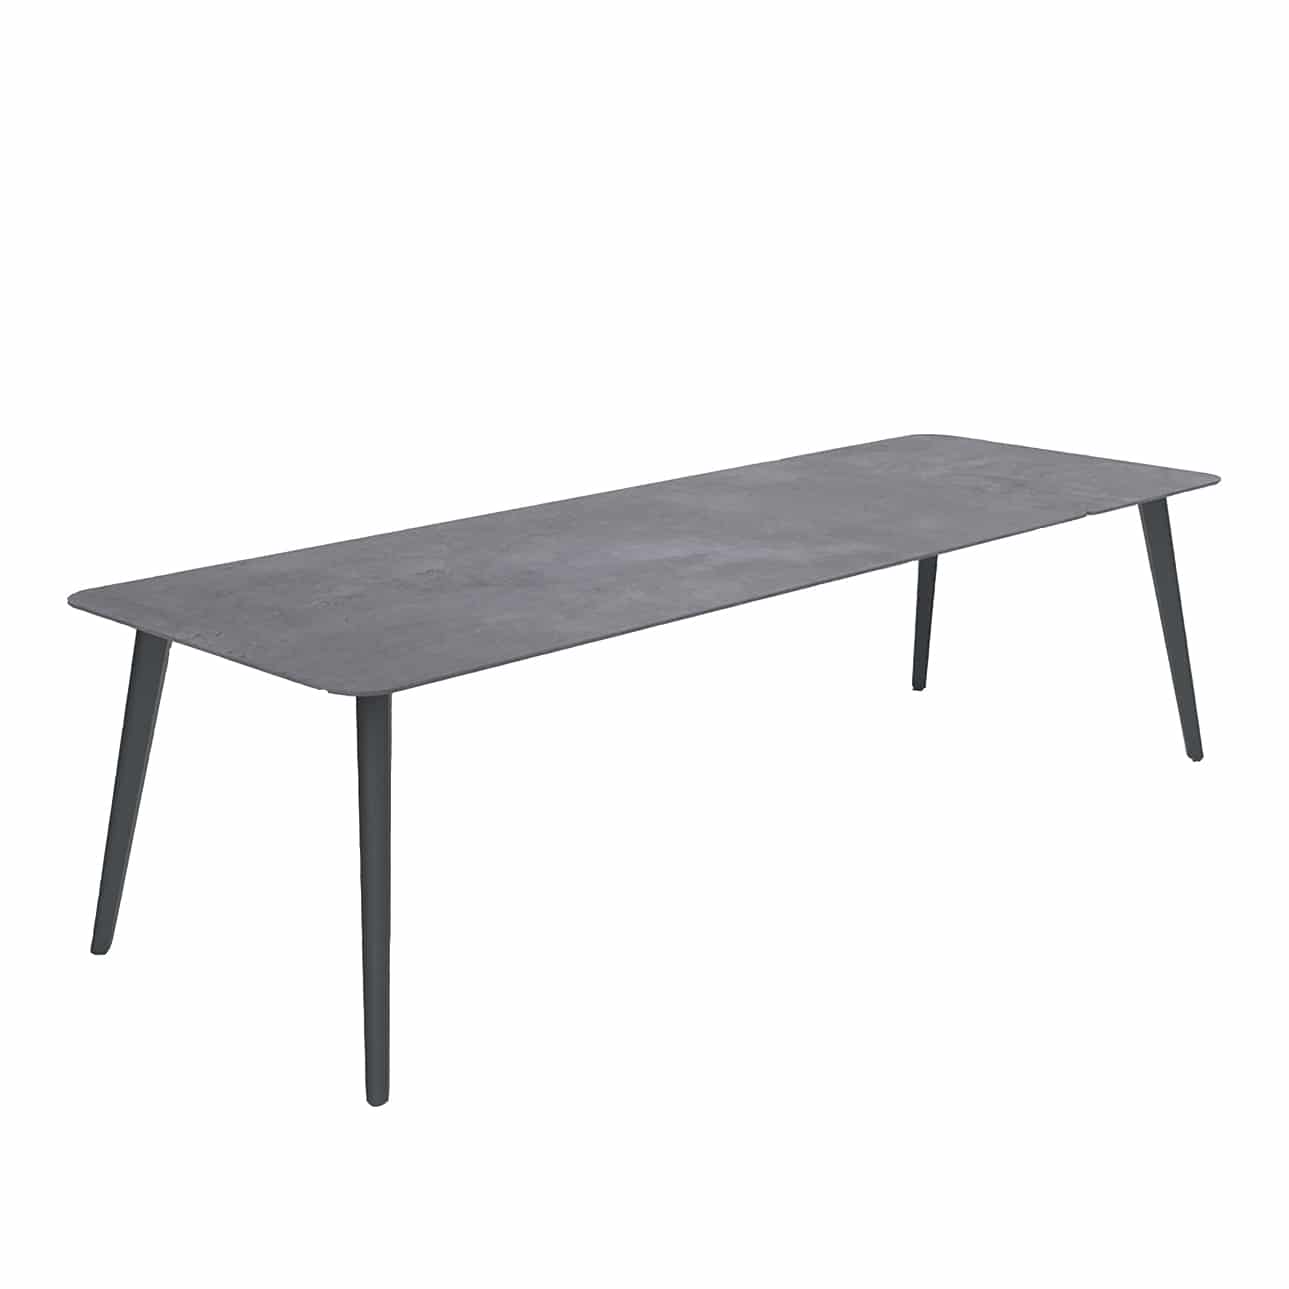 Design Warehouse - 127627 - Kove Outdoor Aluminium Extendible Dining Table  - Coal